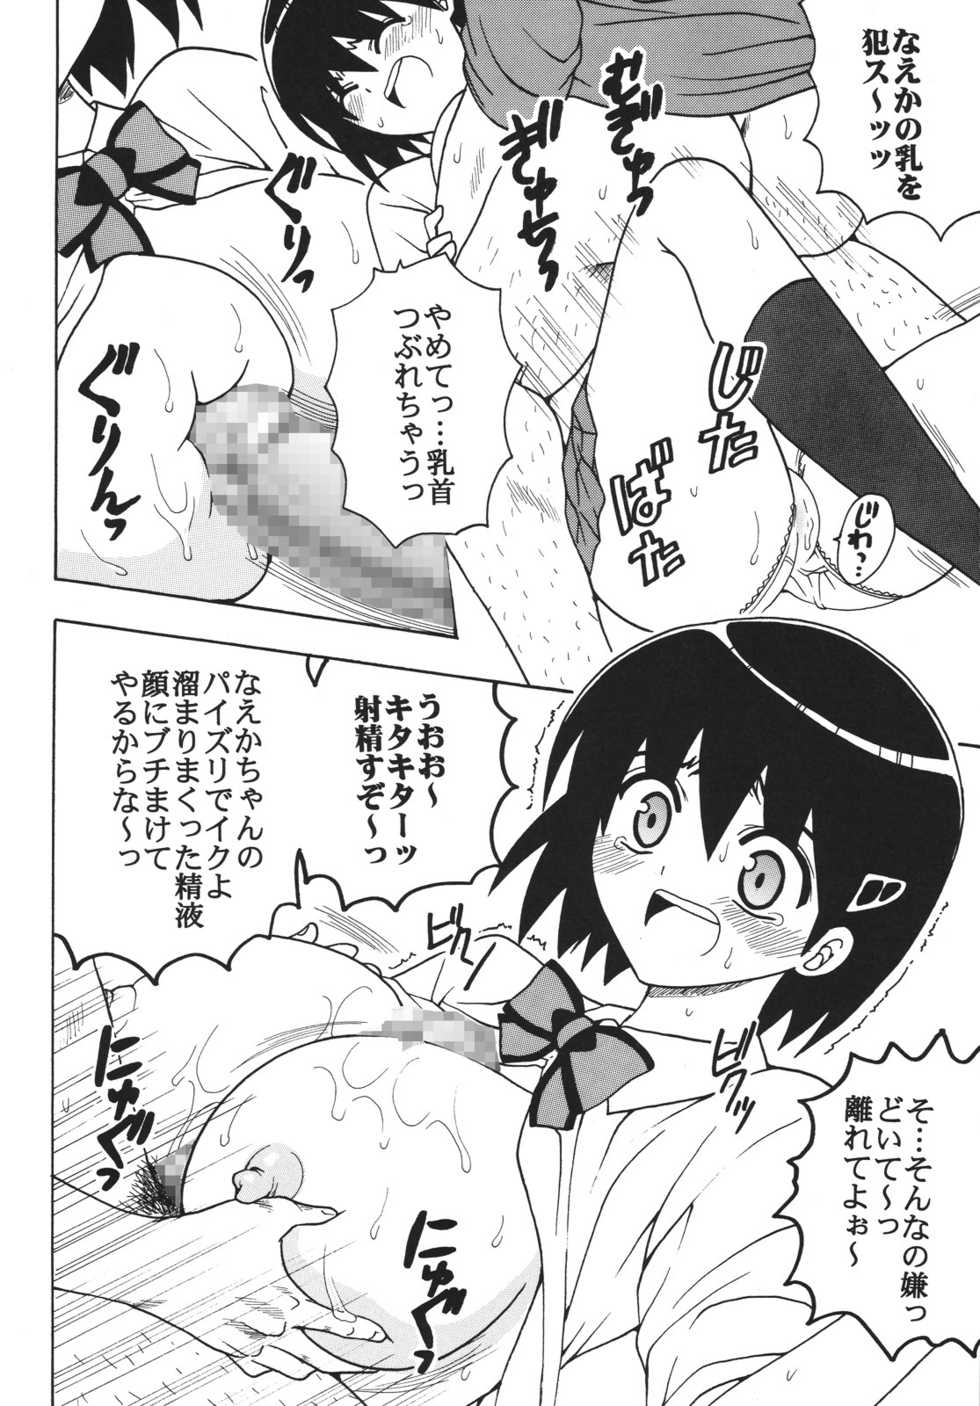 (Puniket 17) [St. Rio] Nakadashi Maid no Hinkaku 1 (Kamen no Maid Guy) - Page 5